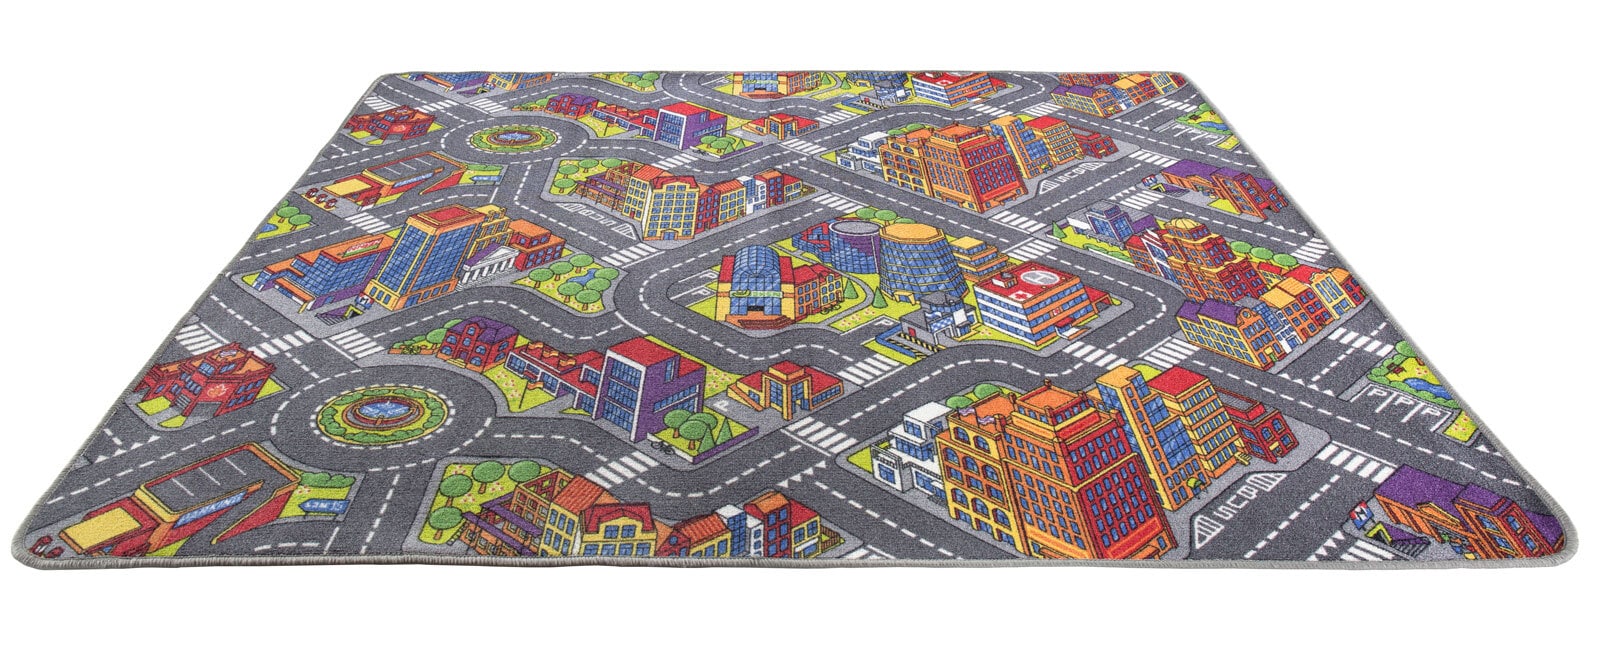 Teppich BIG CITY 140 x 200 cm mehrfarbig